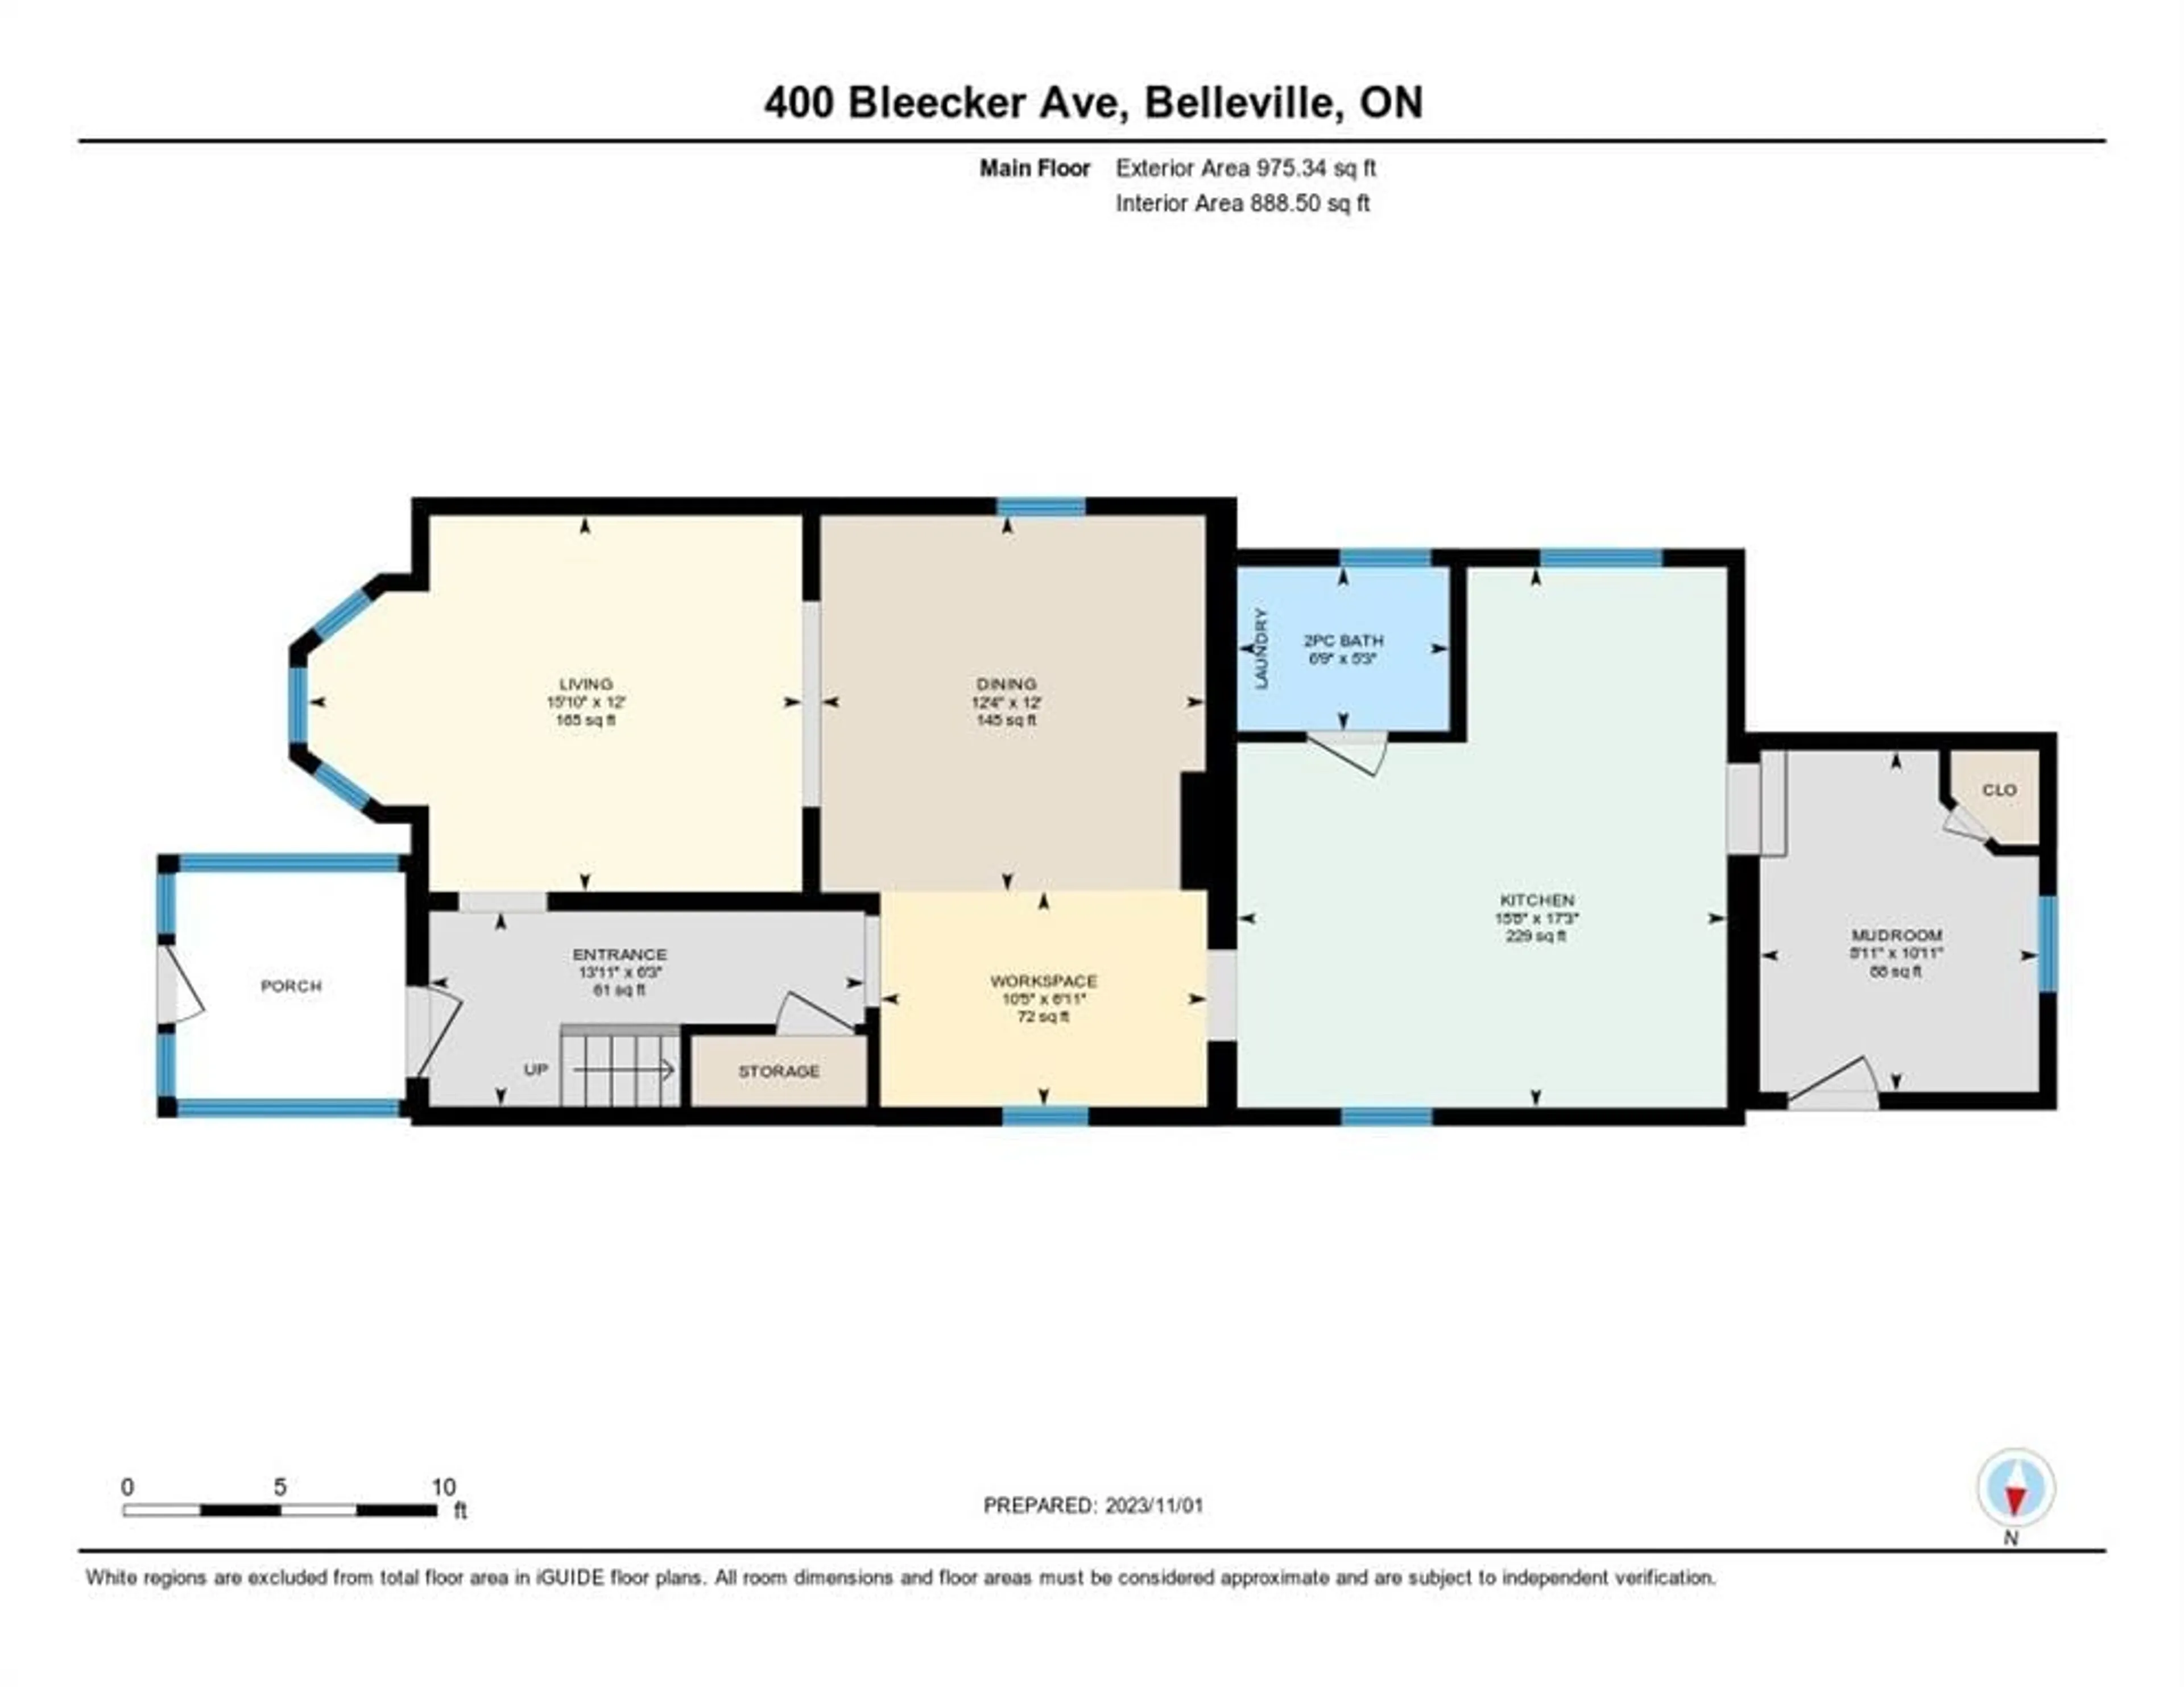 Floor plan for 400 Bleecker Ave, Belleville Ontario K8N 3V8